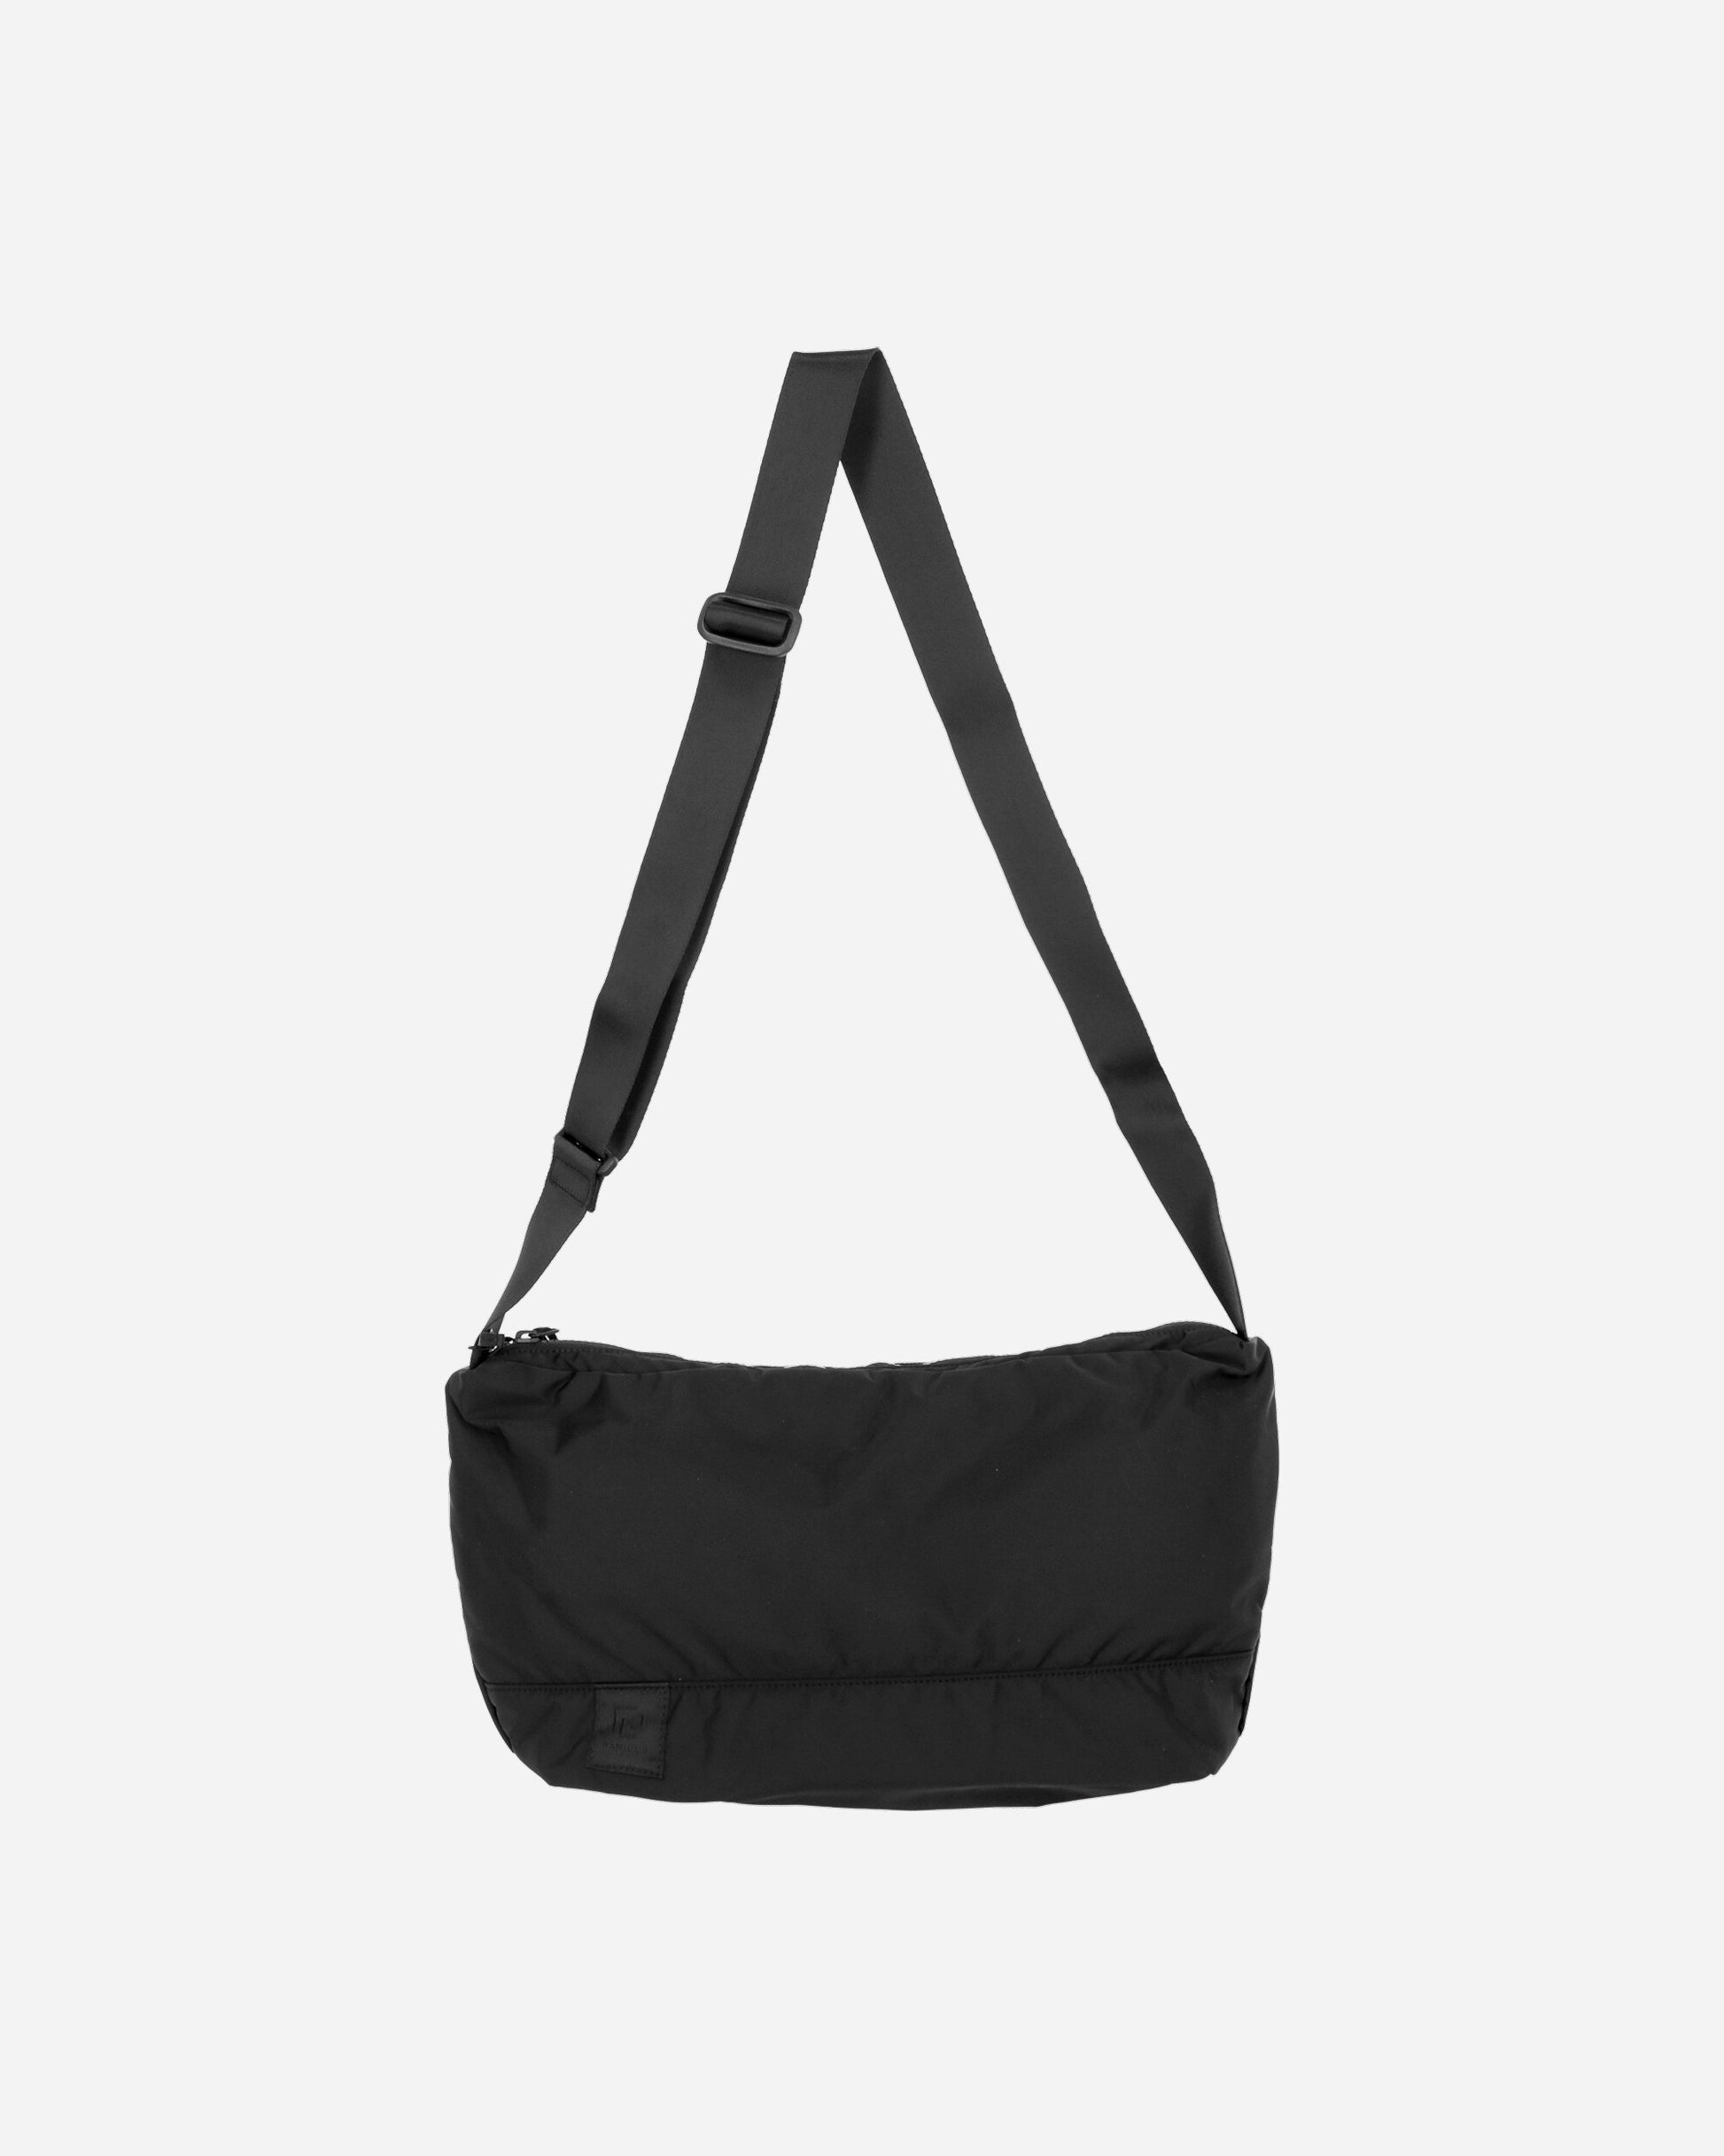 Ramidus Bean Bag Black Bags and Backpacks Shoulder Bags B011097 001